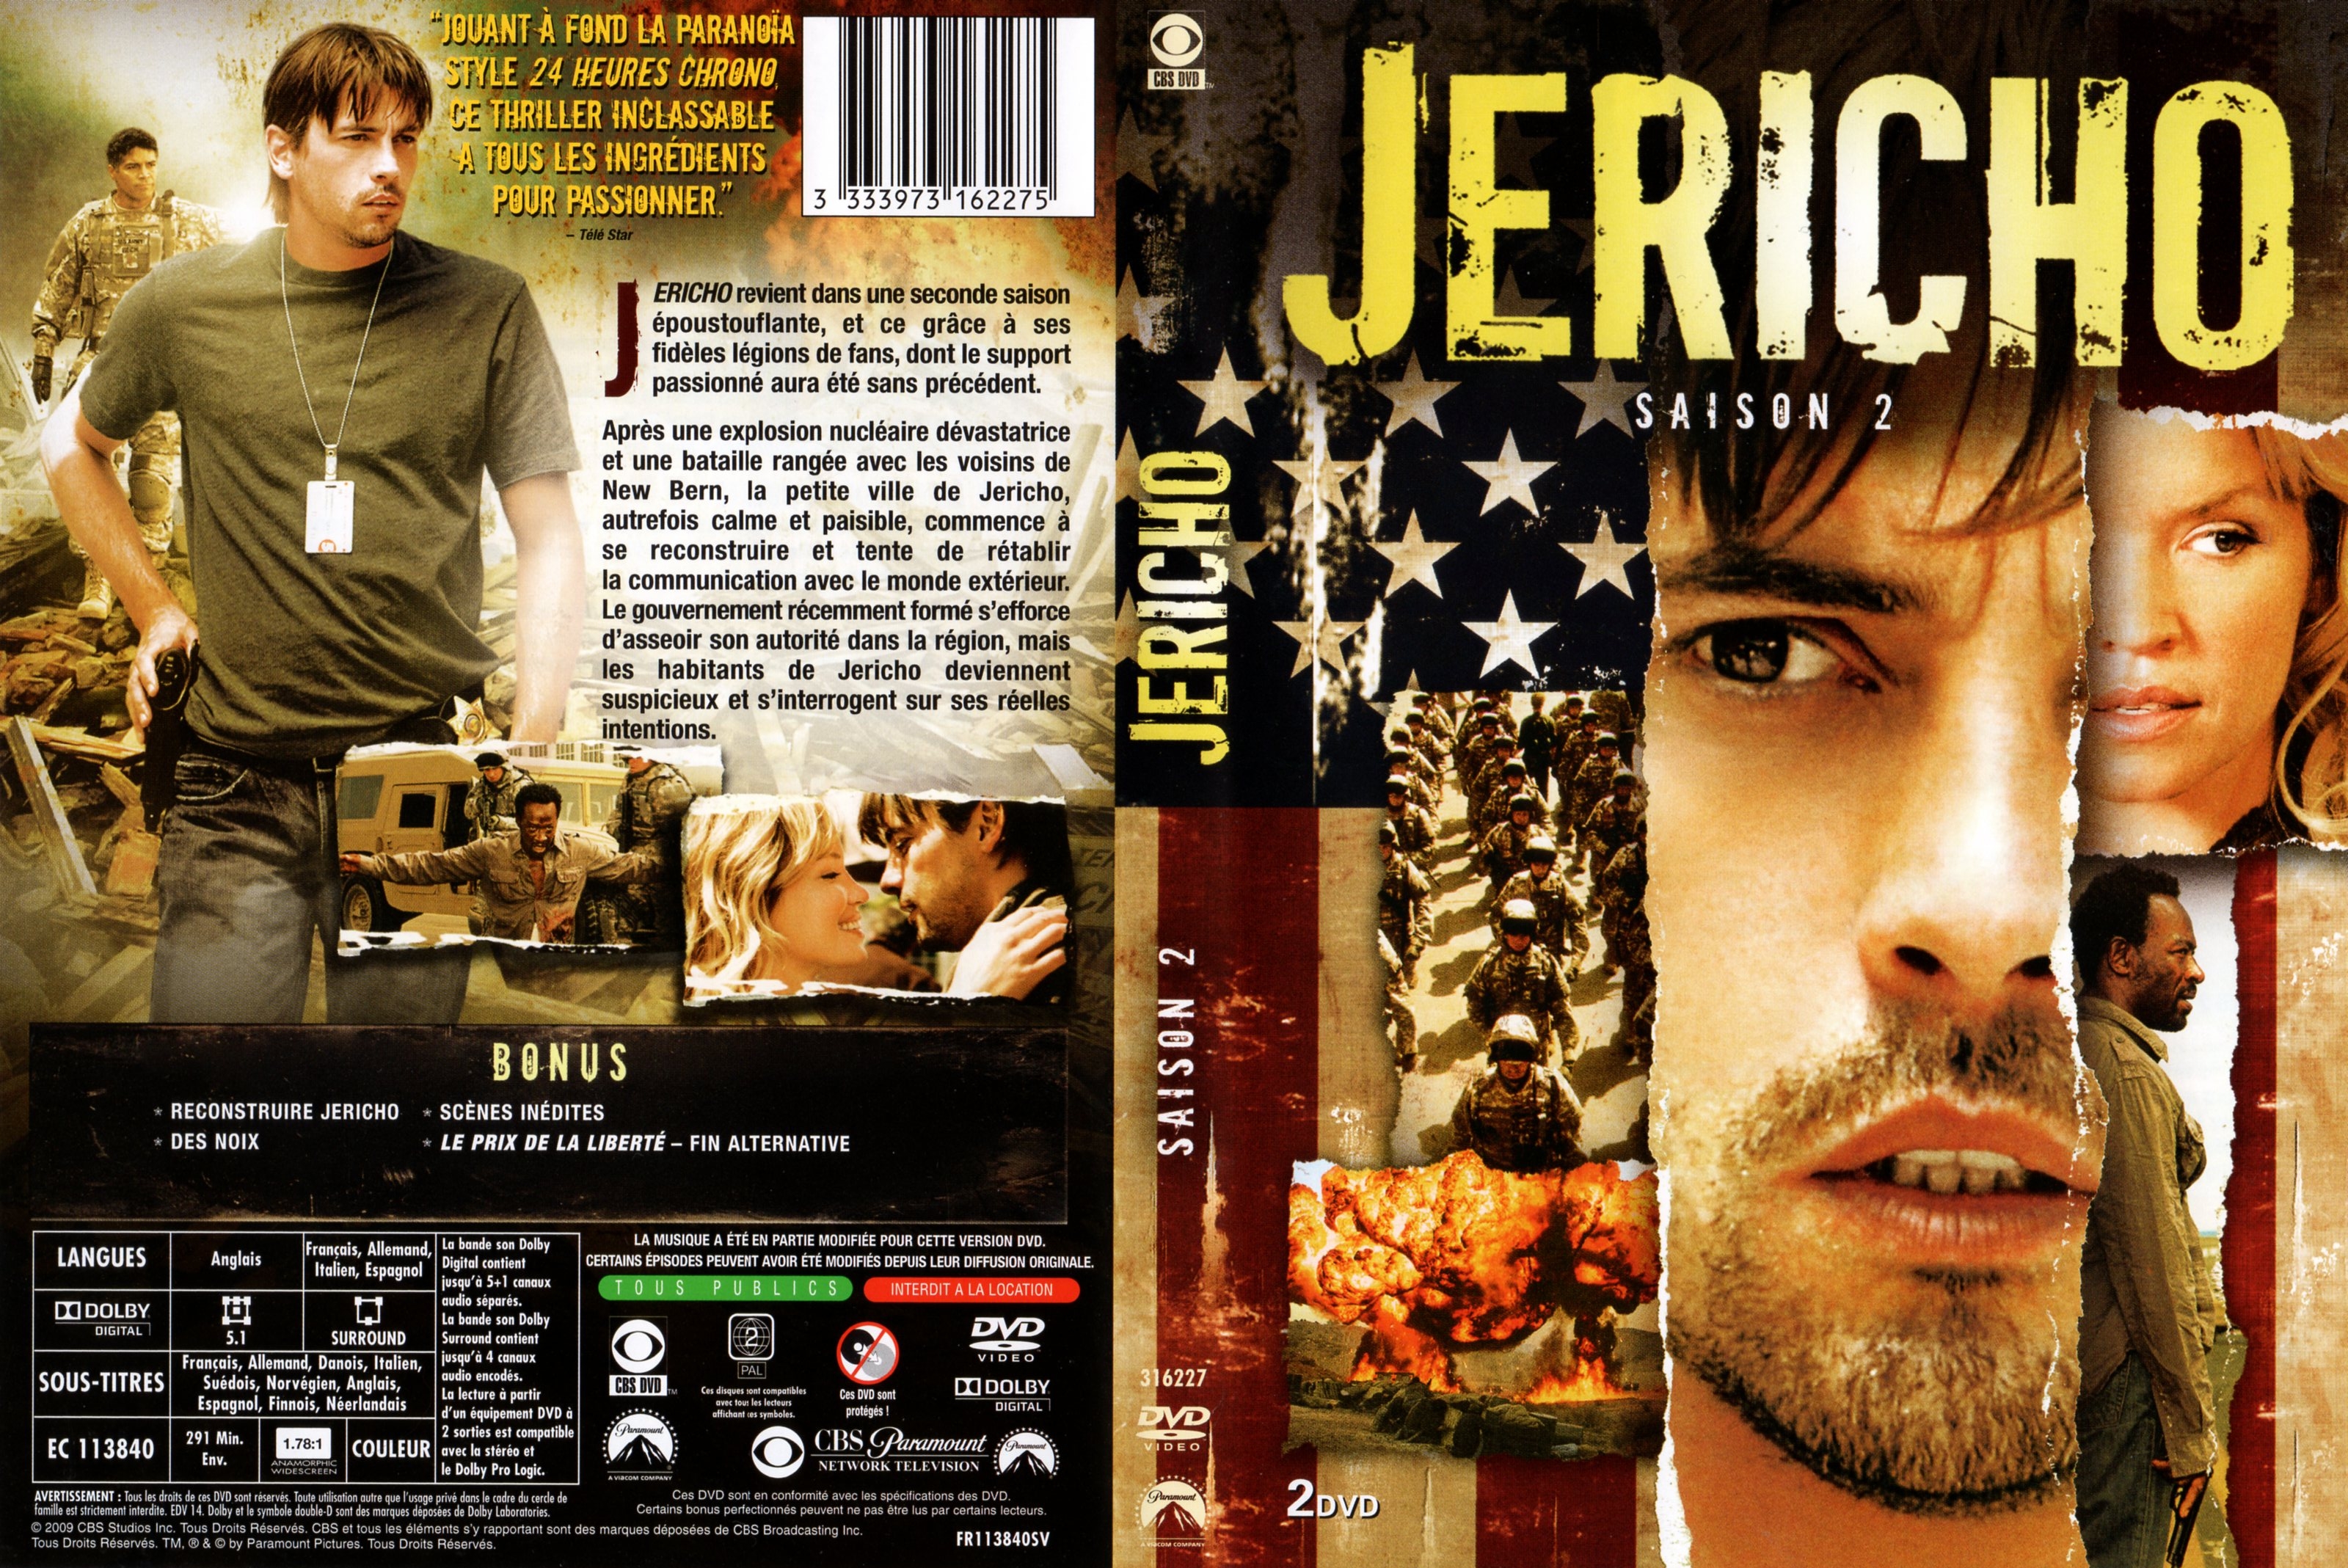 Jaquette DVD Jericho saison 2